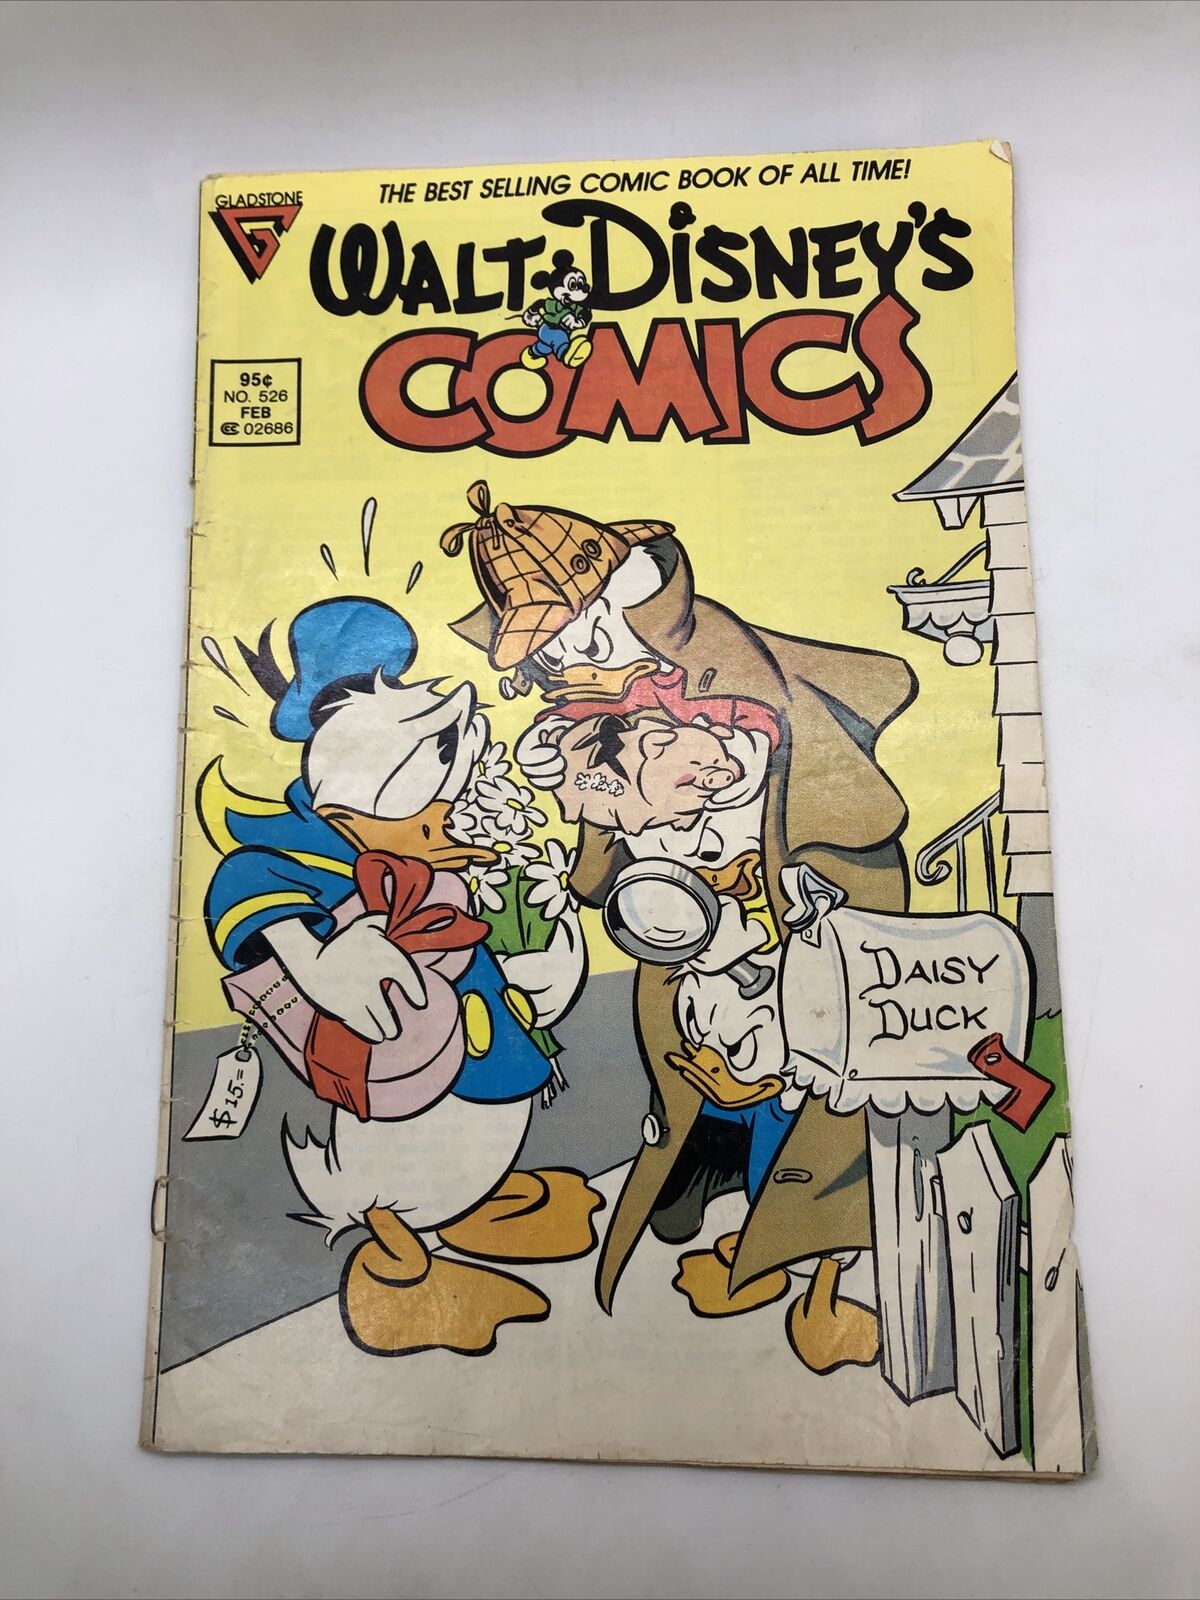 Walt Disney's Comics and Stories #526 Dell comics